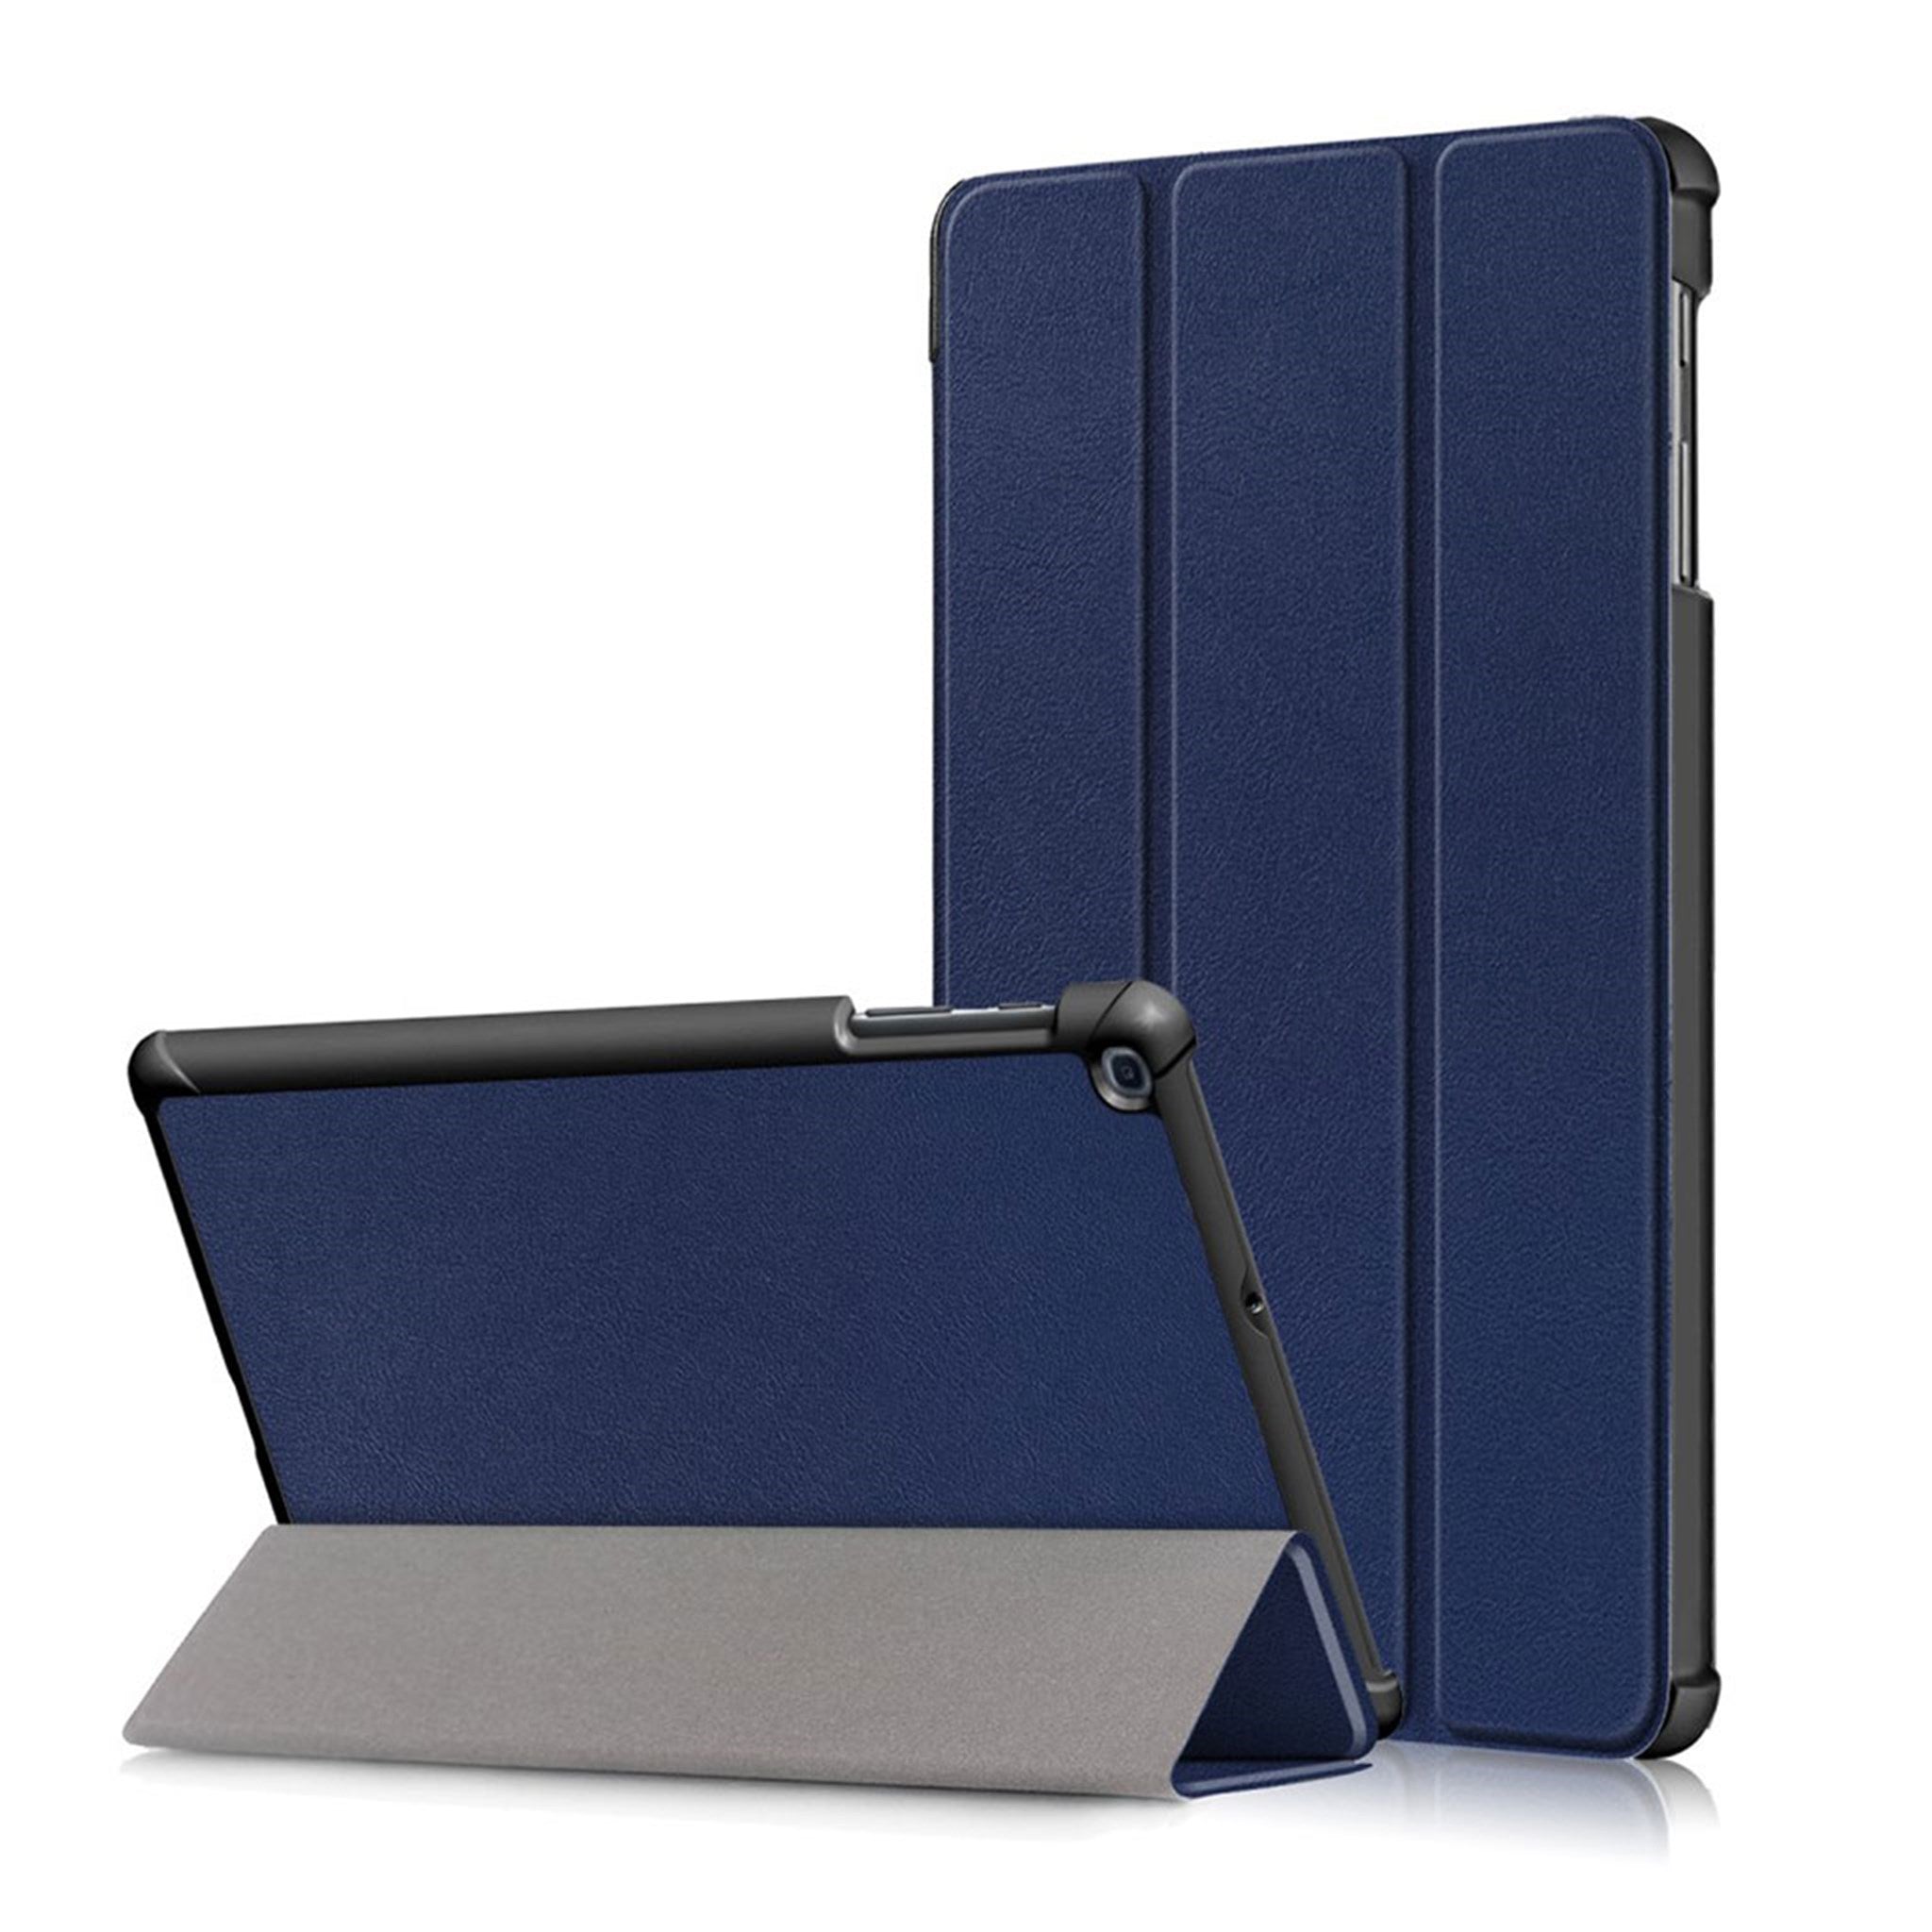 Samsung Galaxy Tab A 10.1 (2019) tri-fold leather case - Dark Blue